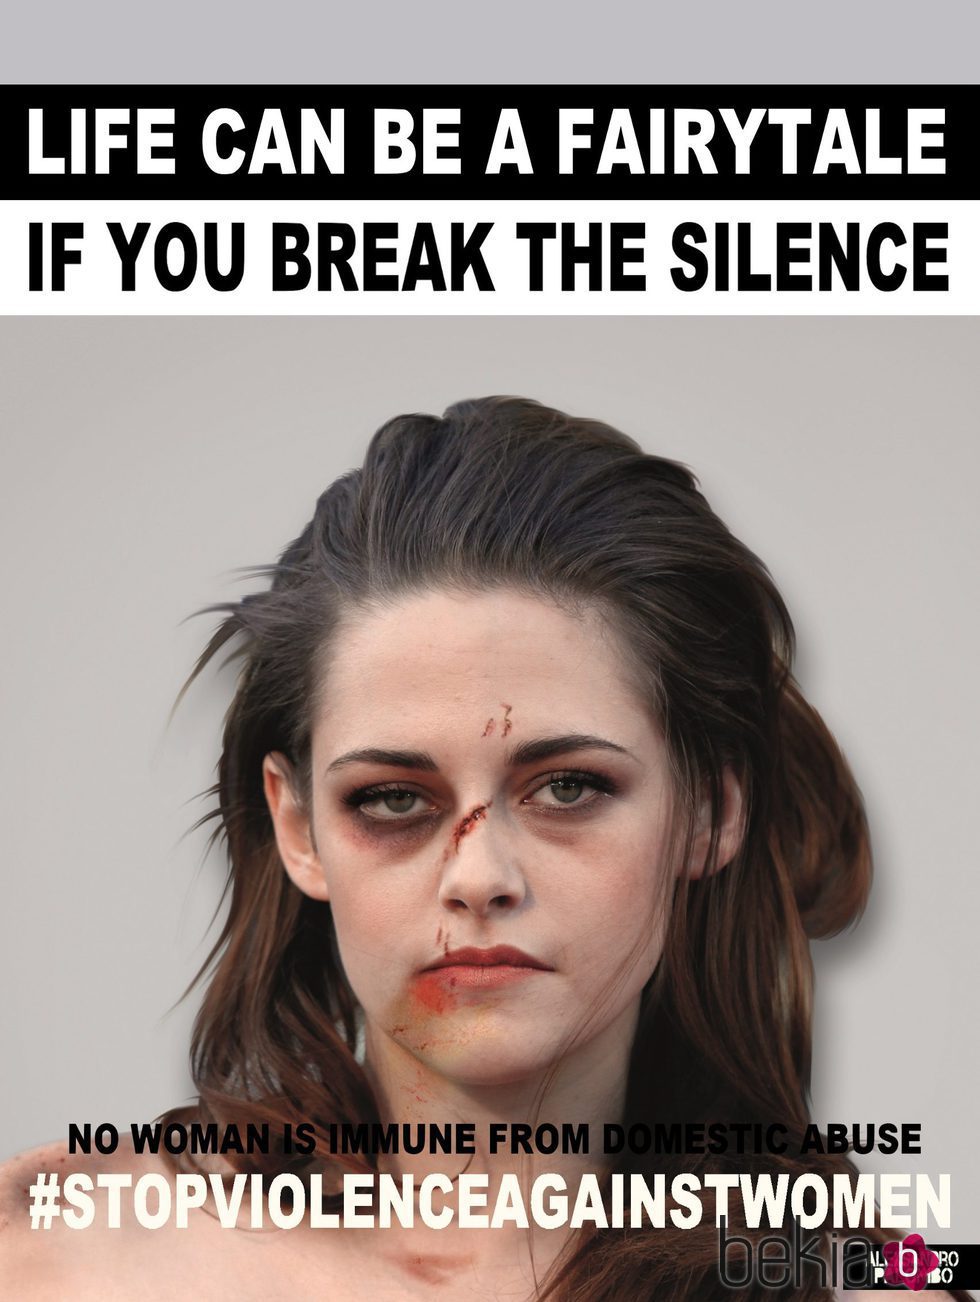 Kristen Stewart imagen de la campaña #Breakthesilence 2015